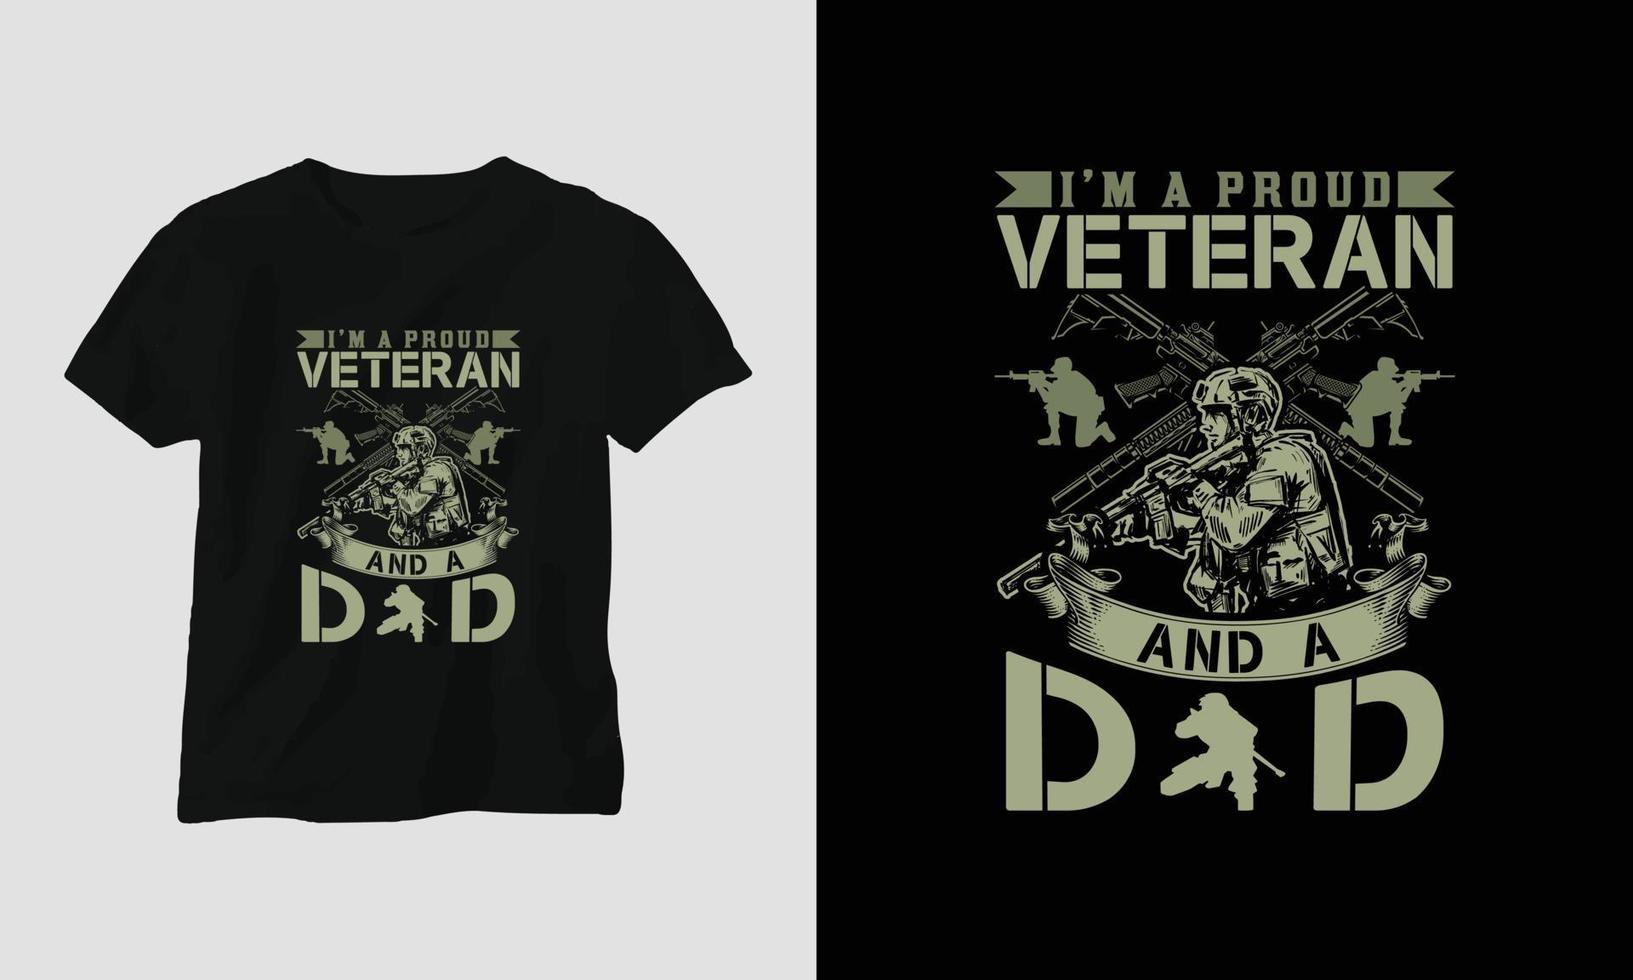 veterano giorno maglietta design con il soldato, bandiera, Armi, e cranio. Vintage ▾ stile con grunge effetto vettore